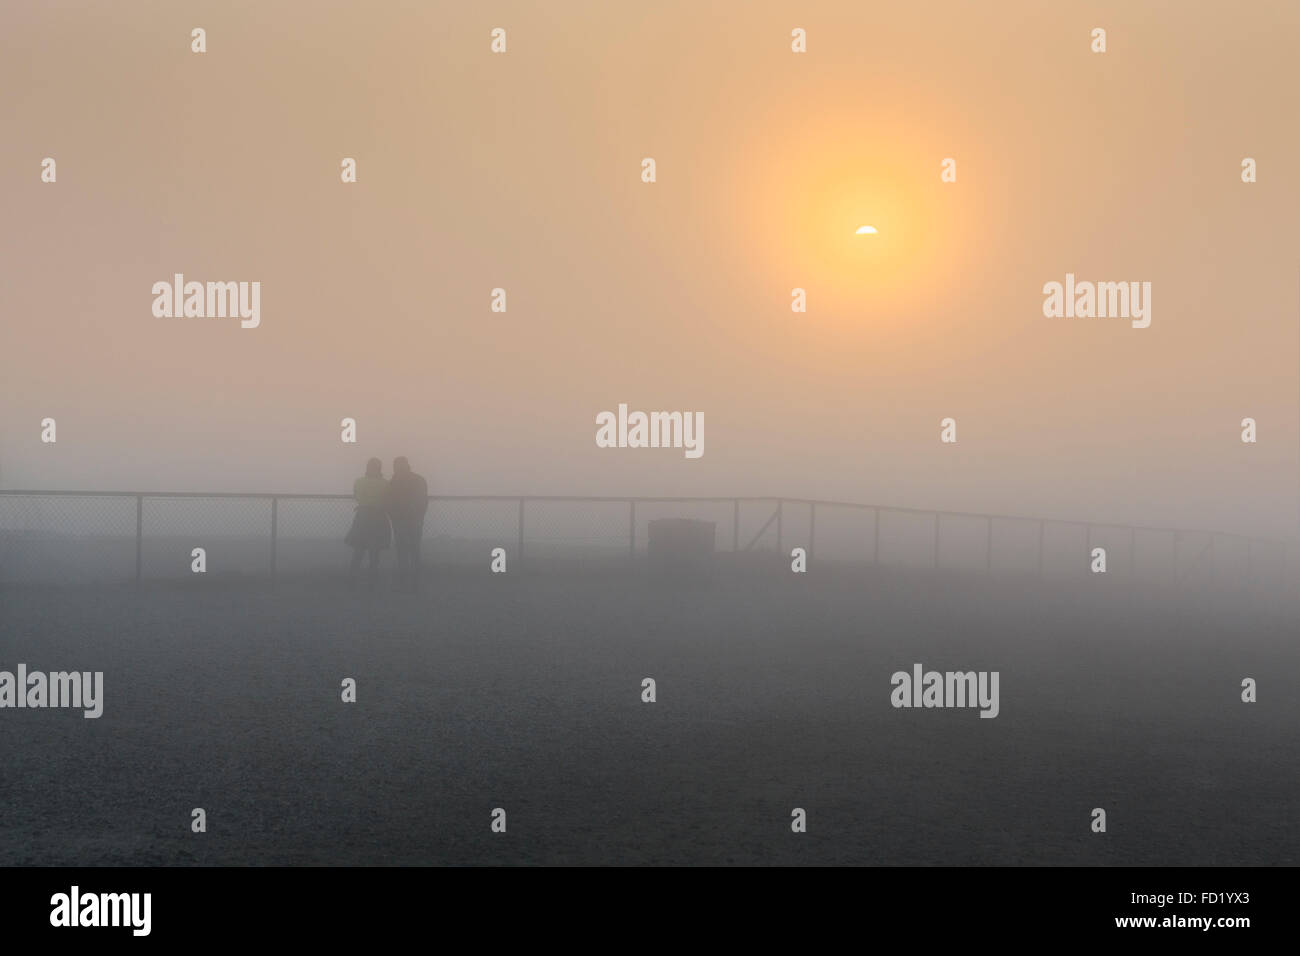 Soleil de minuit dans le brouillard, la plate-forme Nordkapplatået Nordkap, Nordkapp, Magerøya, comté de Finnmark, Norvège Banque D'Images